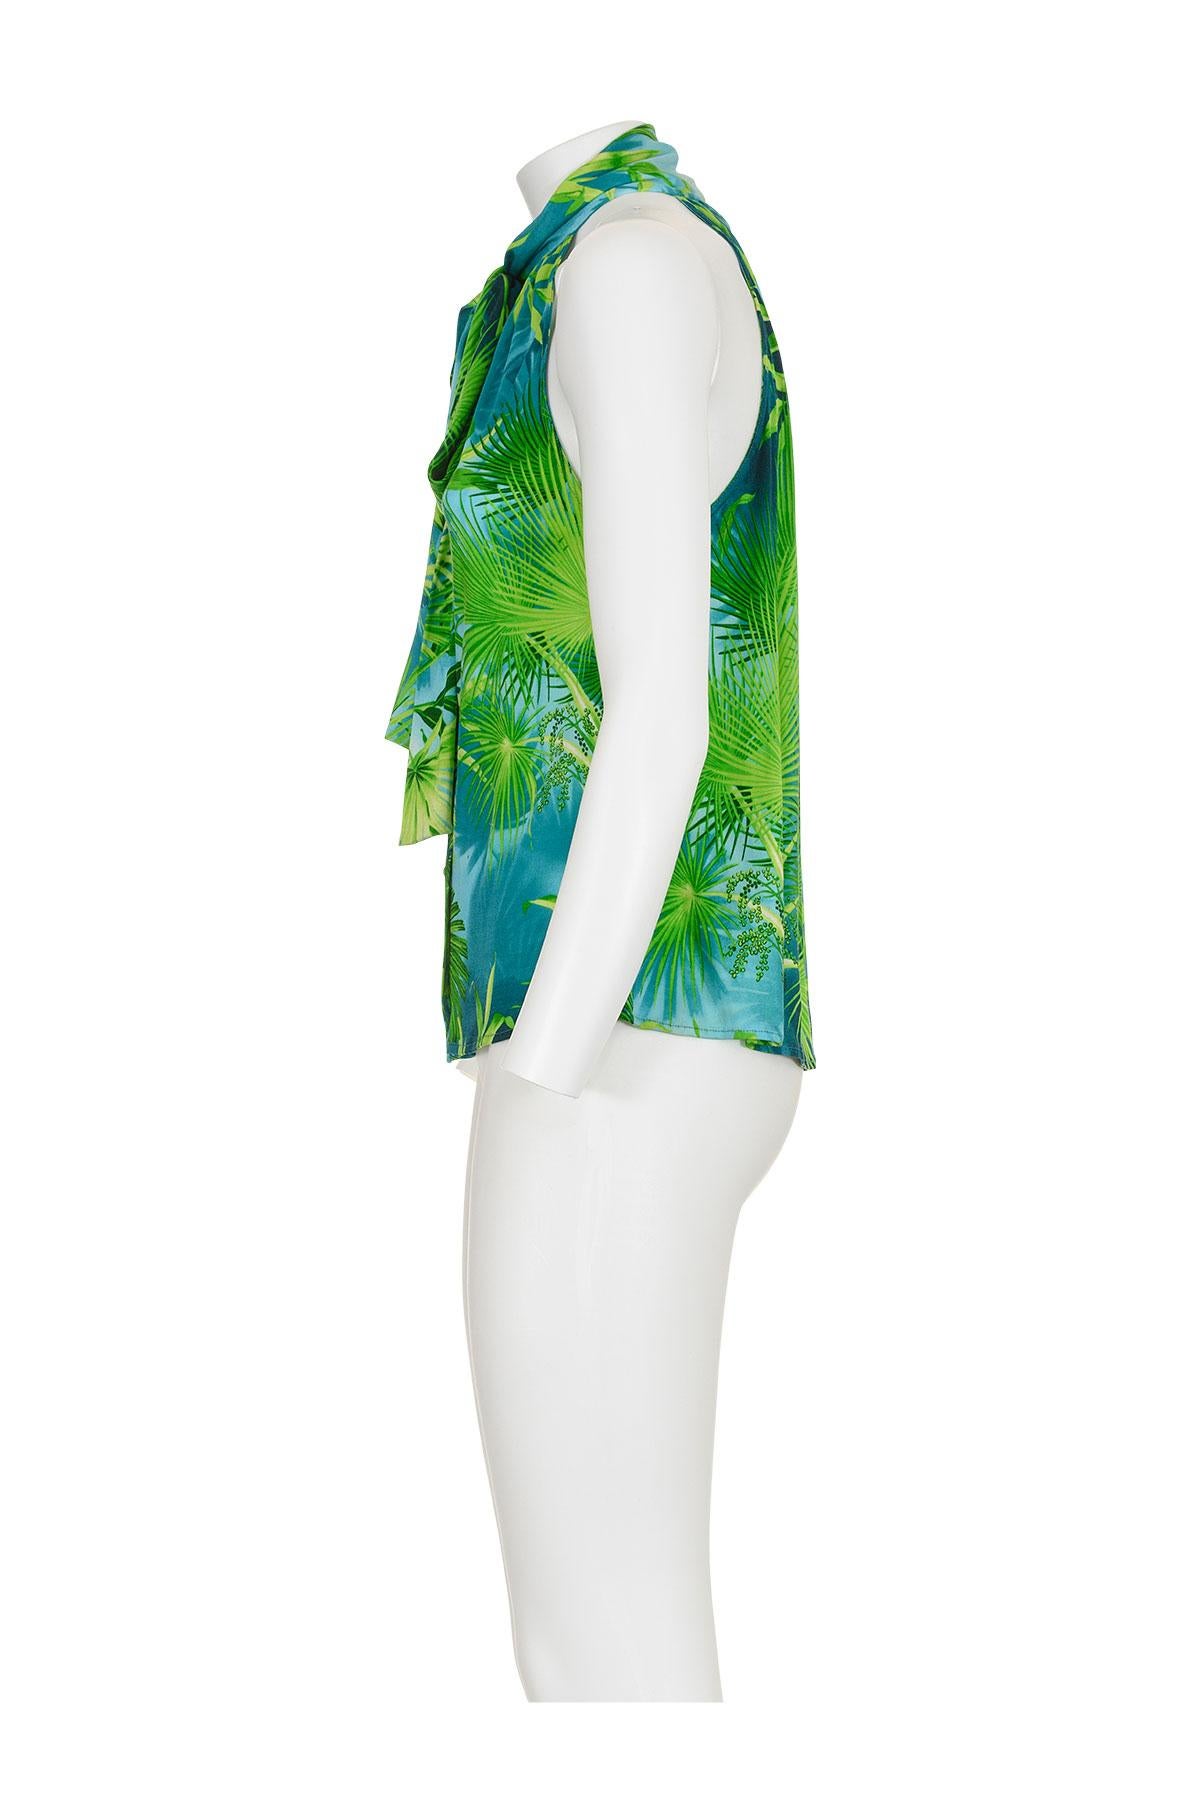 Frühlings-Sommer 2000 ikonisches Dschungel-Halftertop von Gianni Versace.
Krawatte im Nacken.
Swarovski-Knöpfe.
Das Etikett mit der Zusammensetzung fehlt, es scheint aus Seide und Jersey zu sein.